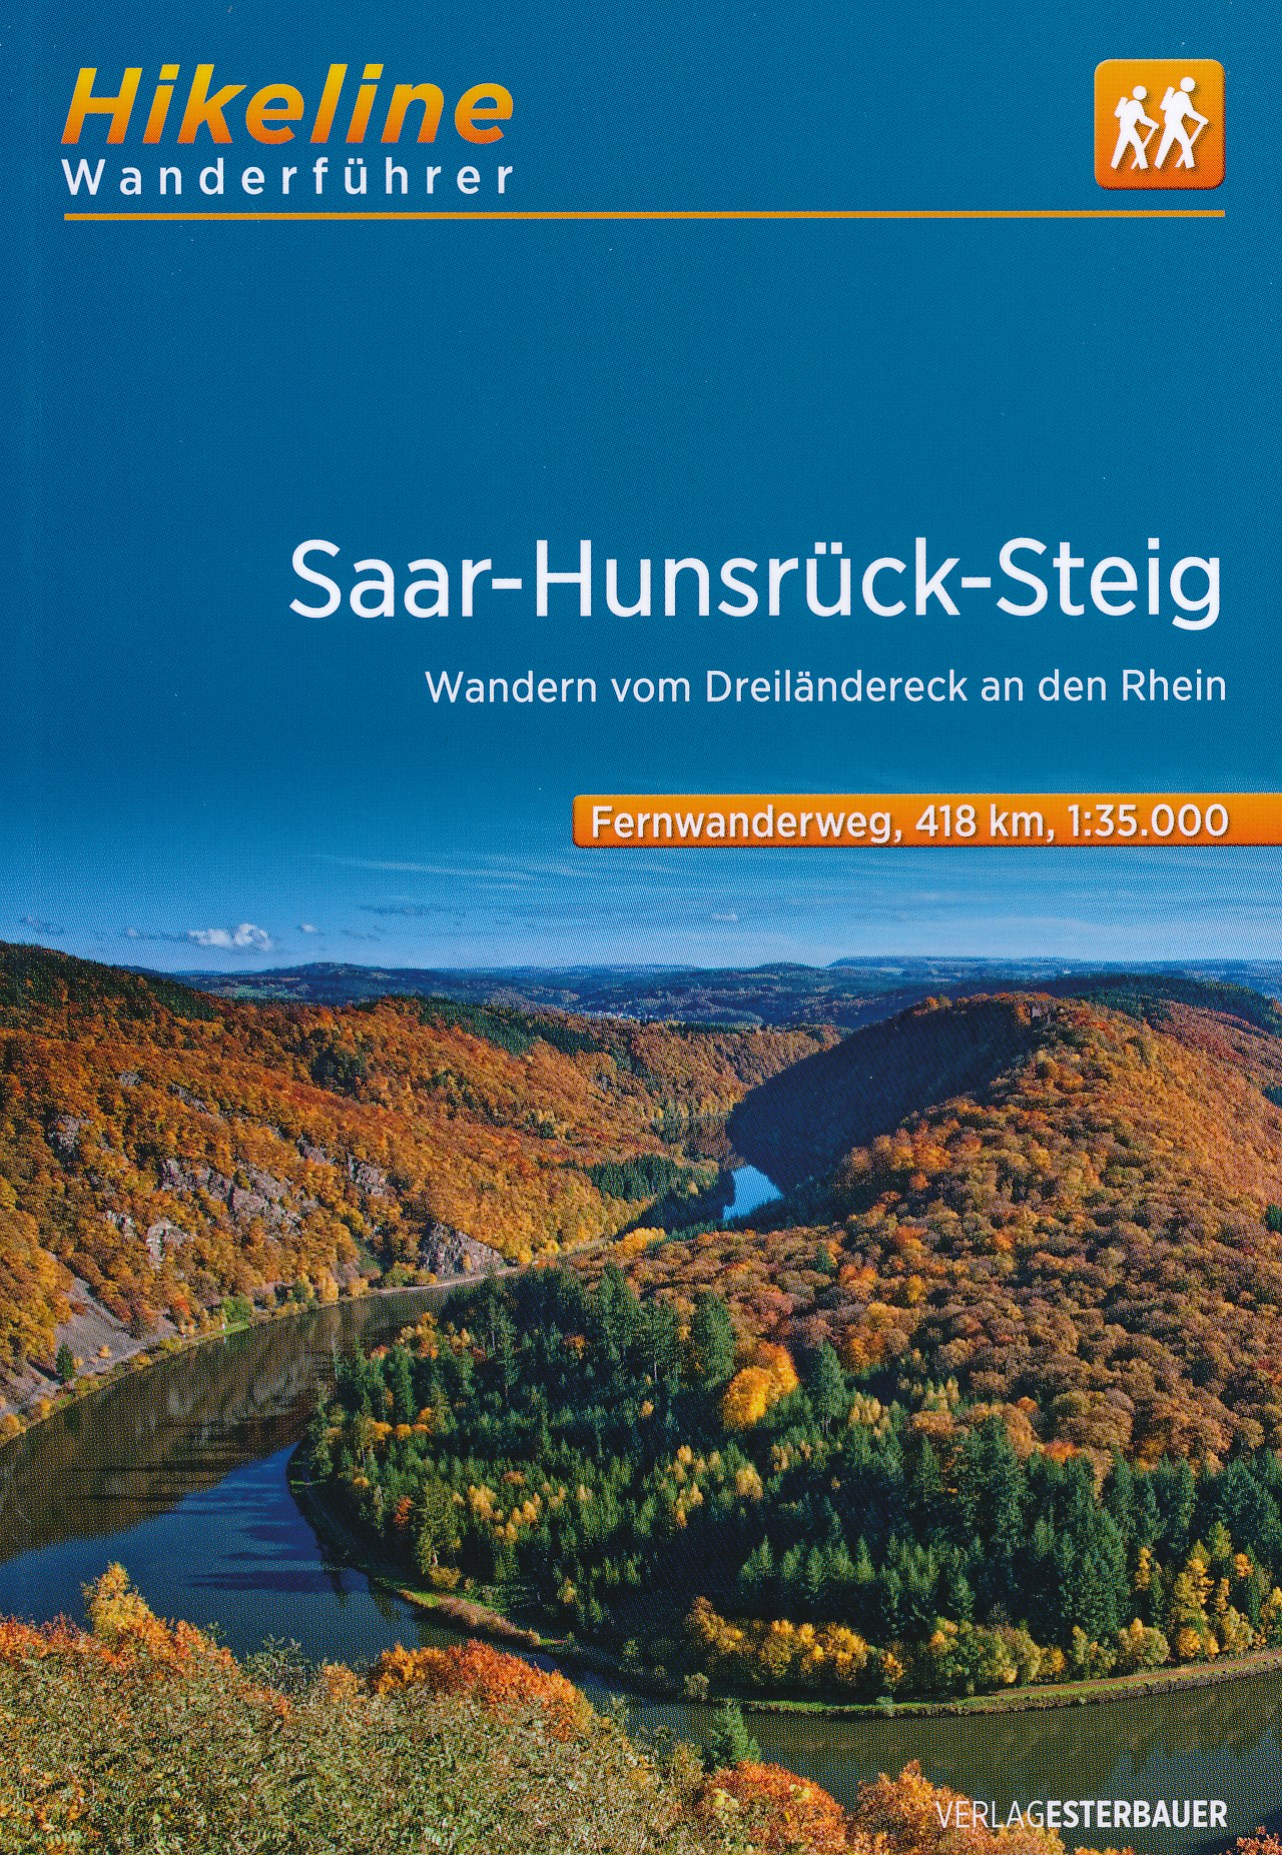 Online bestellen: Wandelgids Hikeline Saar-Hunsrück Steig | Esterbauer